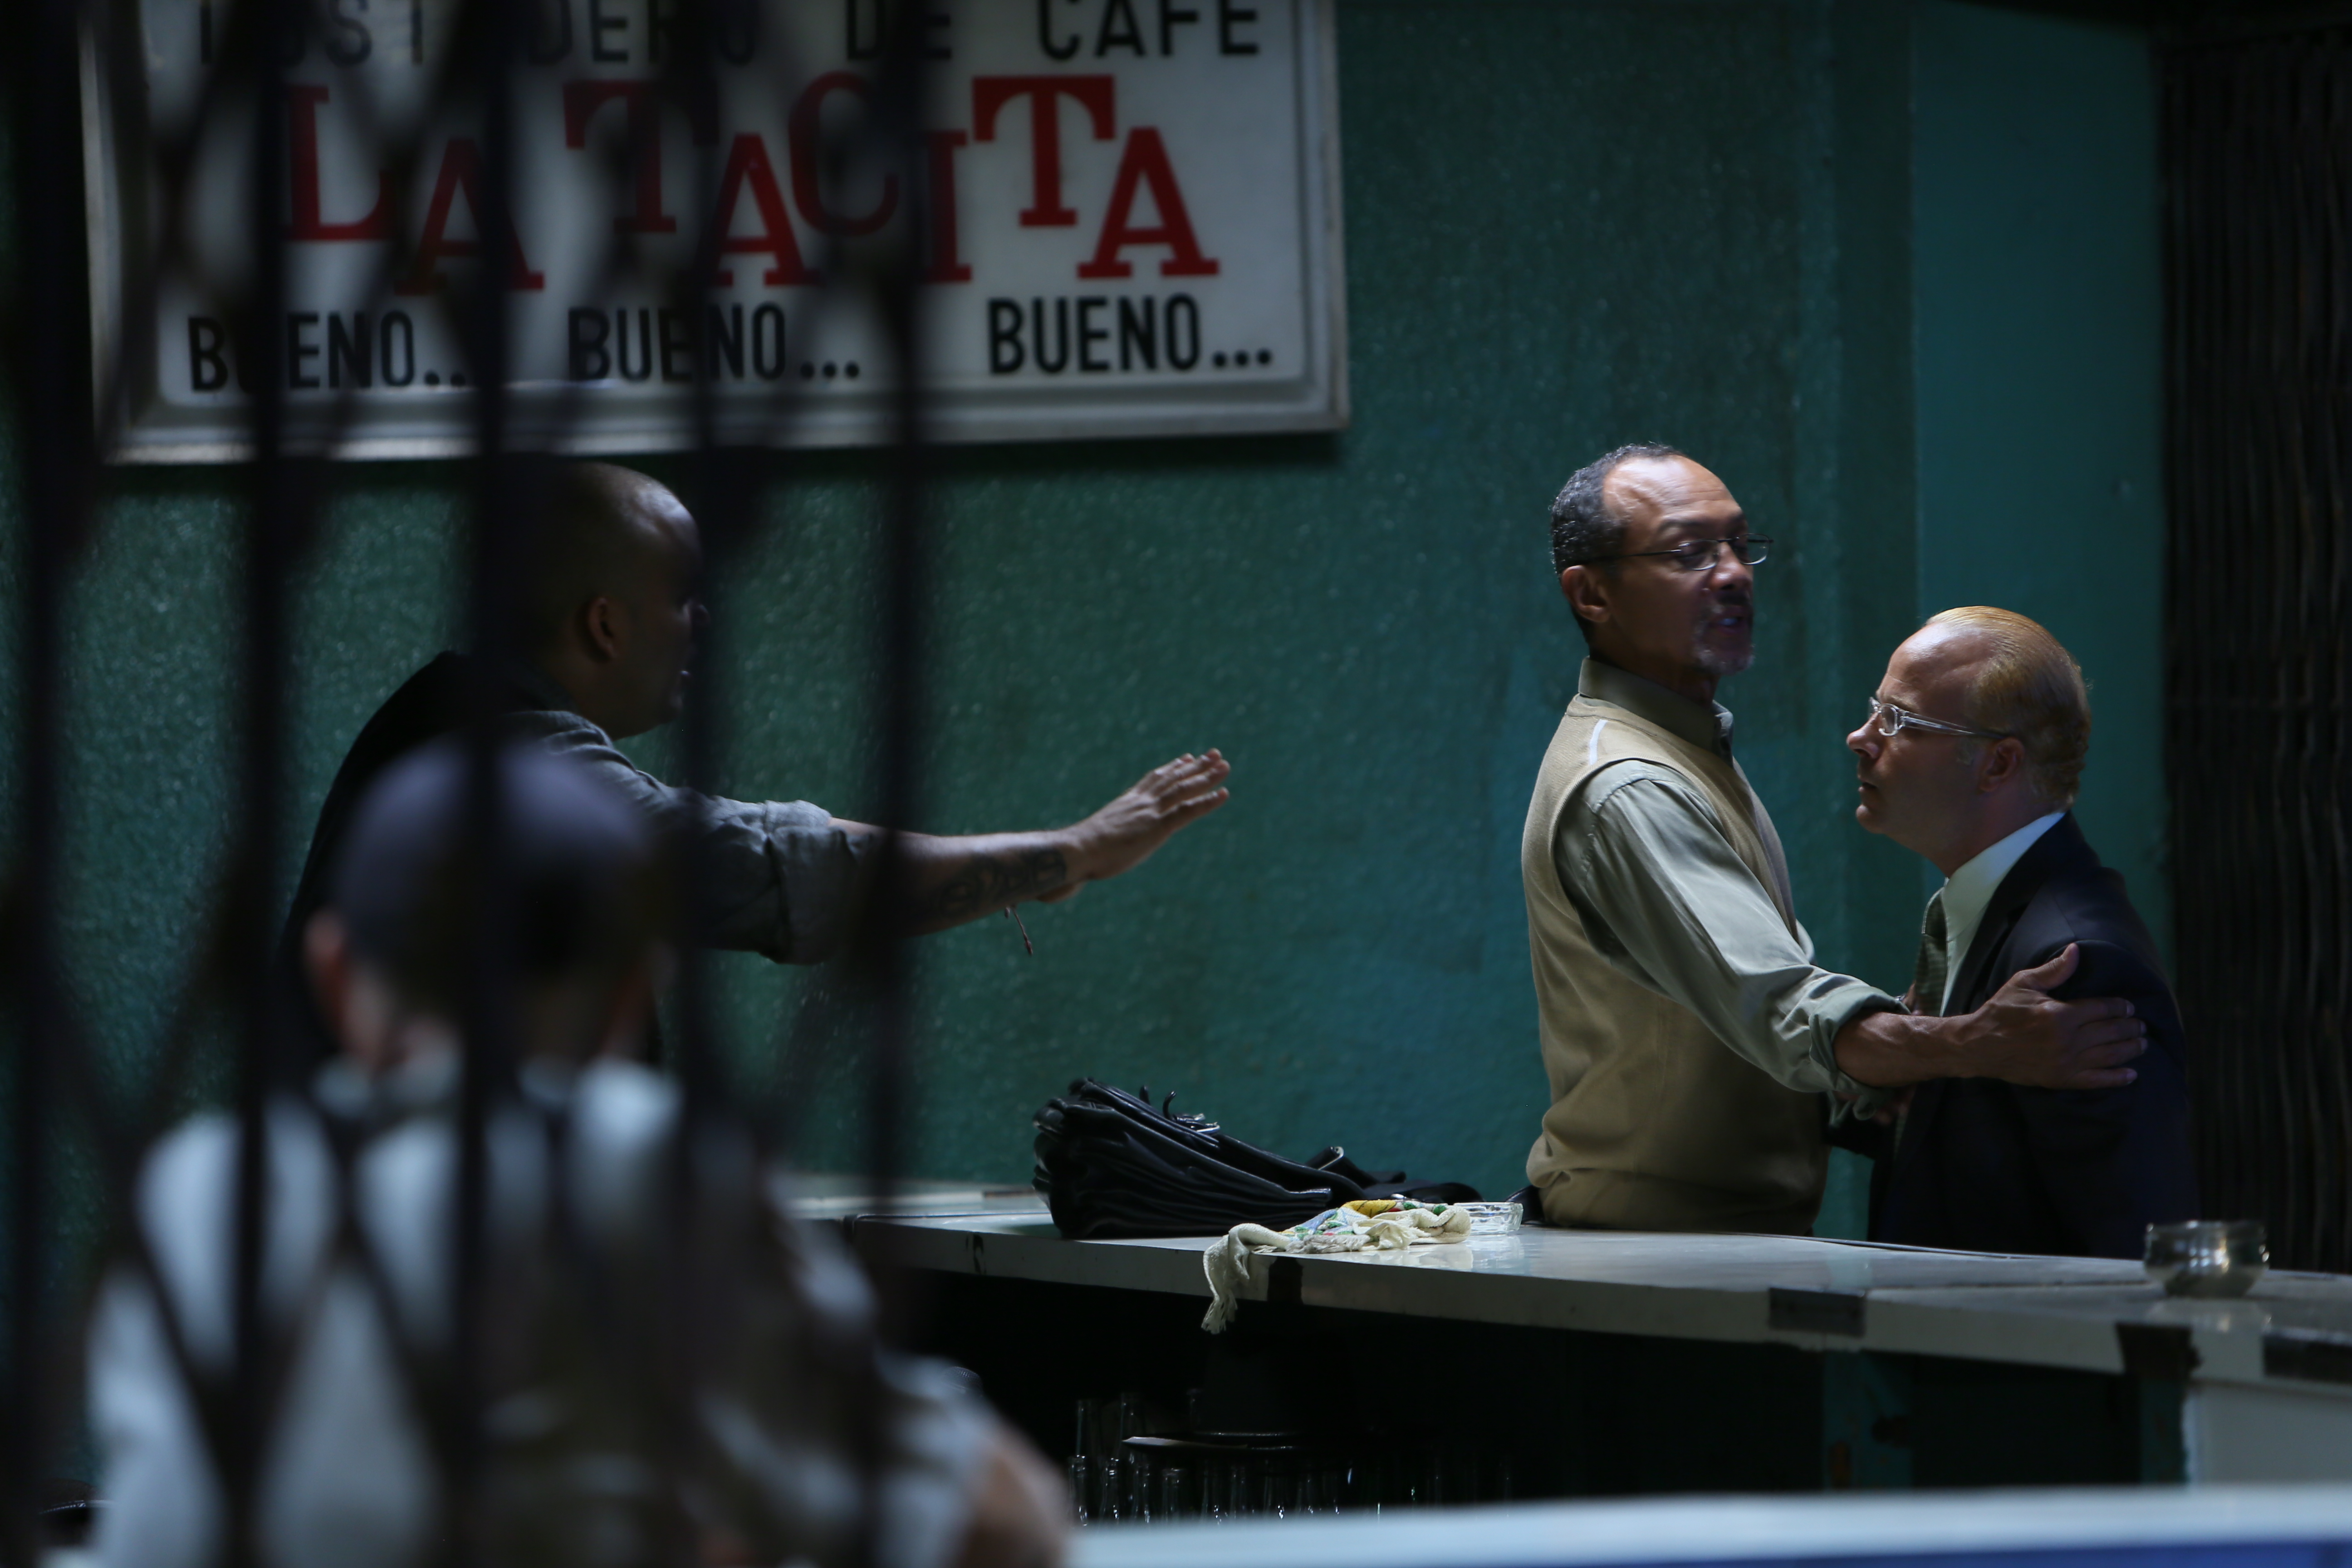 El Cata, Paul Calderon & Liche Ariza in a scene from Biodegradable (2013)